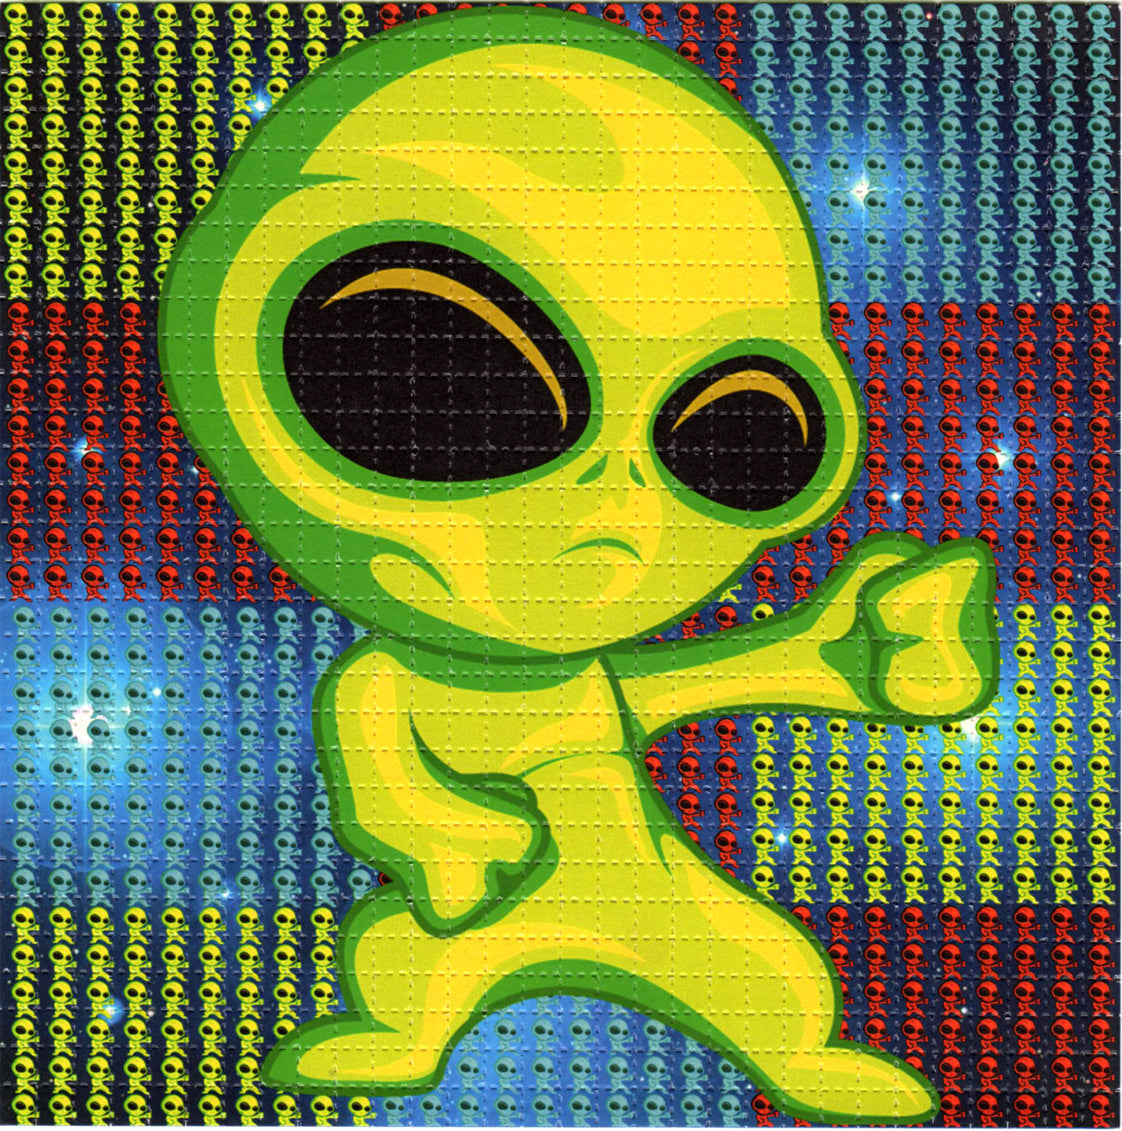 Big Alien LSD blotter art print